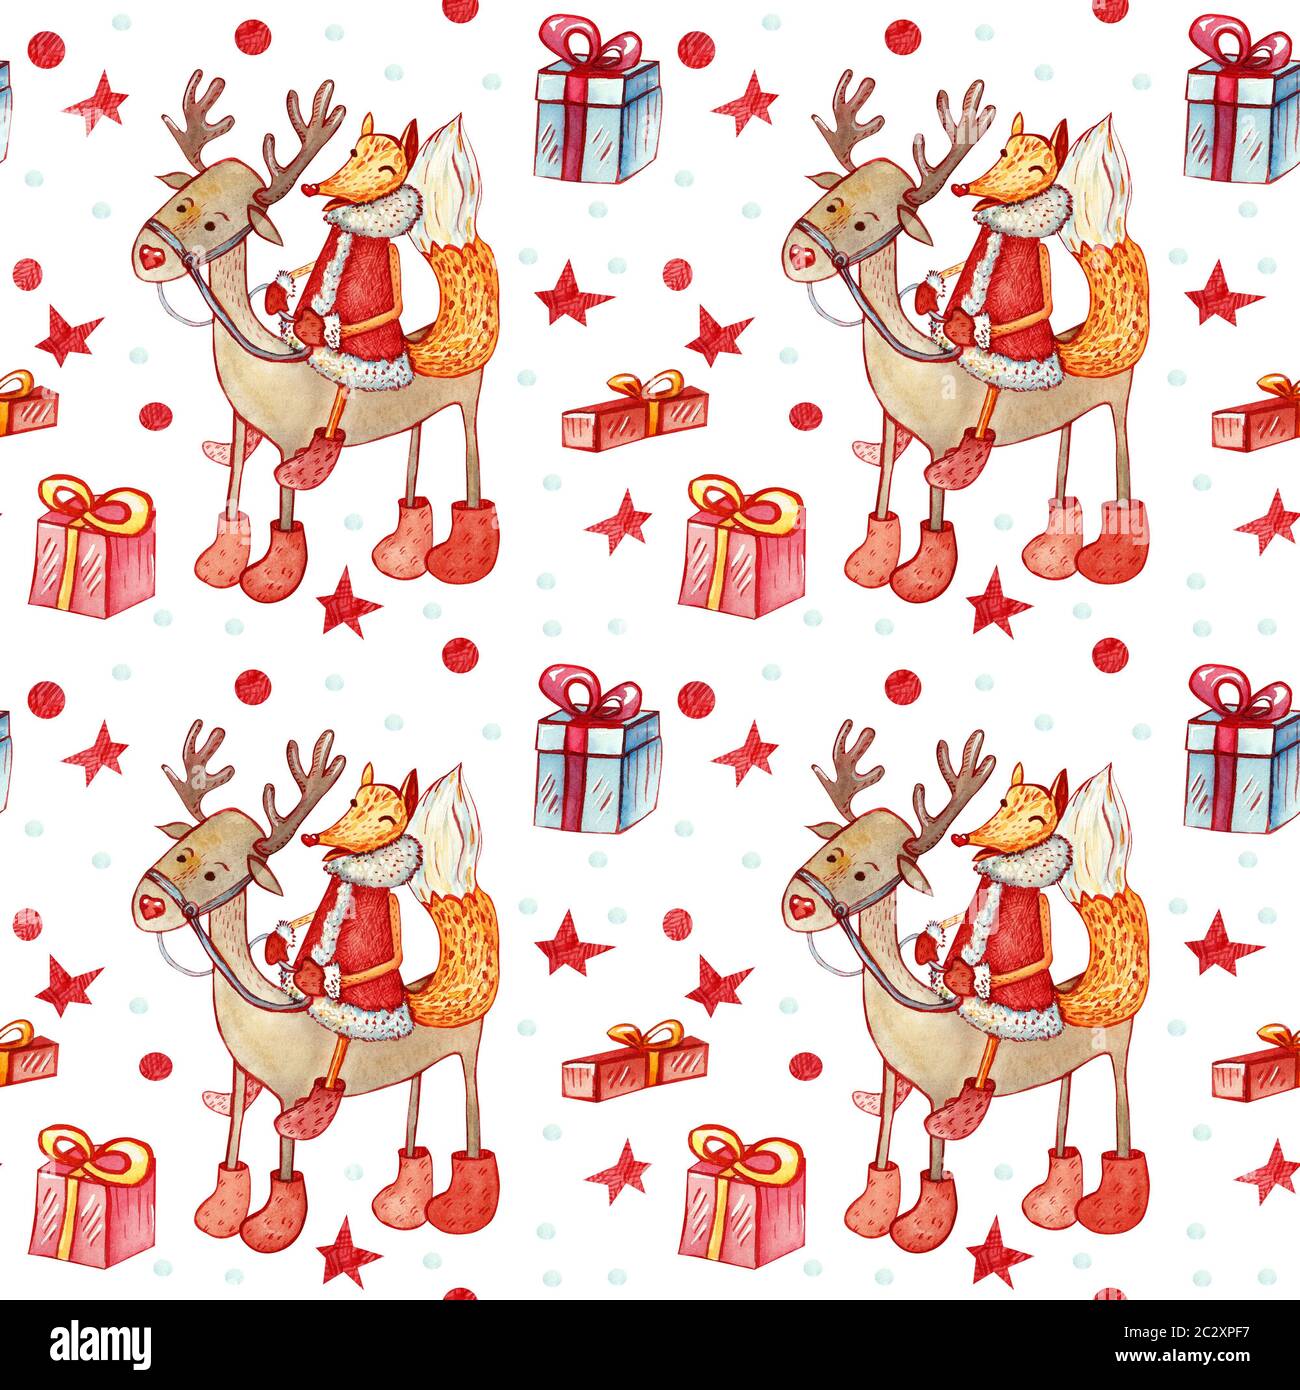 Weihnachten nahtlose Hintergrund mit Fox. Festliche Charakter, ein Reh mit Geschenkboxen mit Sternen und Schneeflocken auf einem weißen Hintergrund. Stockfoto